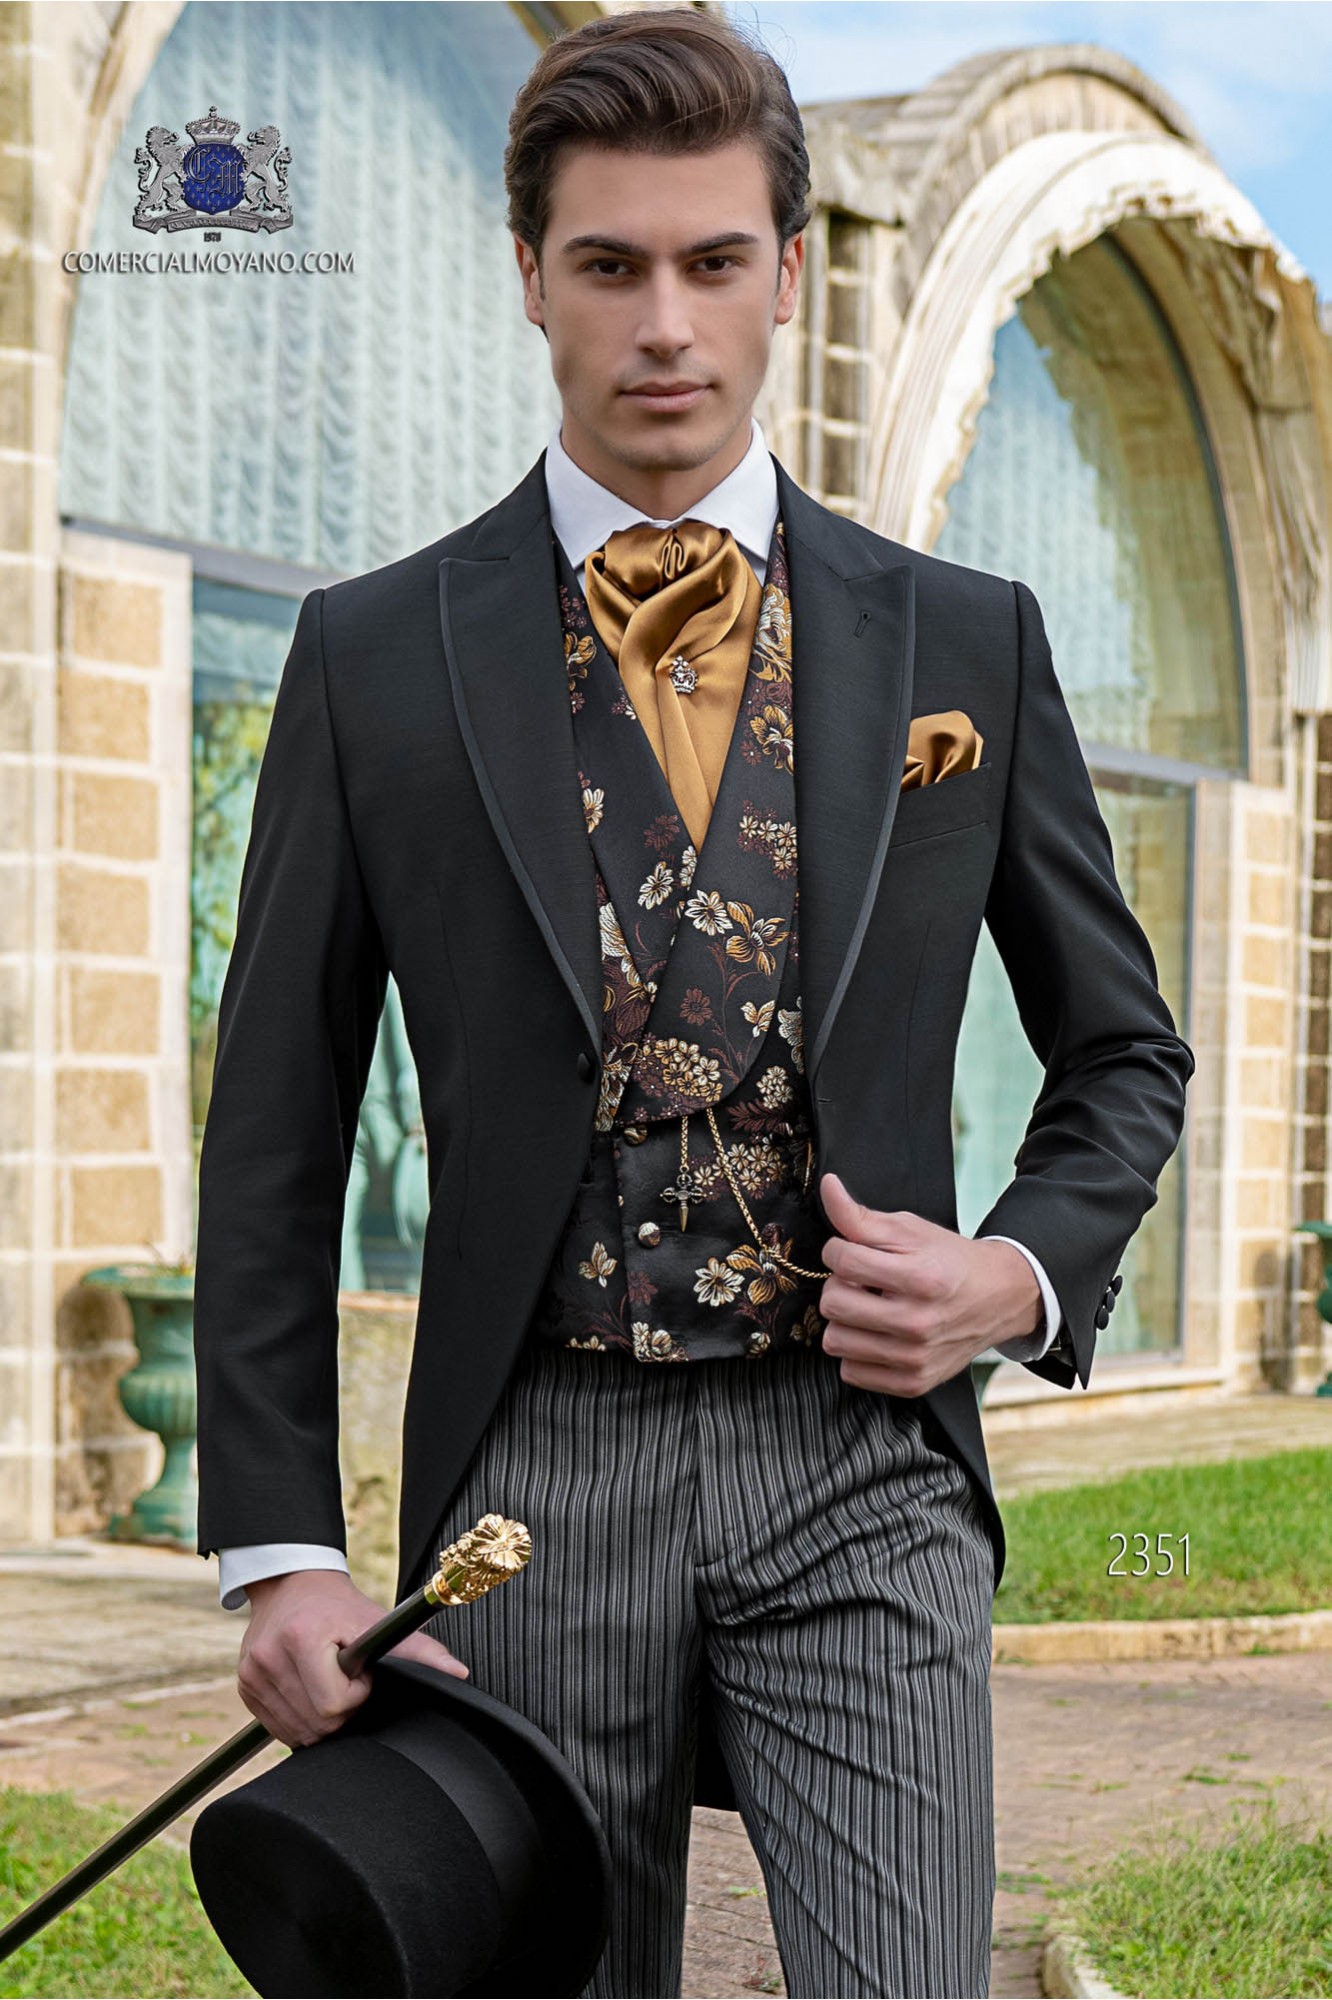 Chaqué negro coordinado con pantalón raya diplomática modelo: 2351 Mario Moyano colección Gentleman